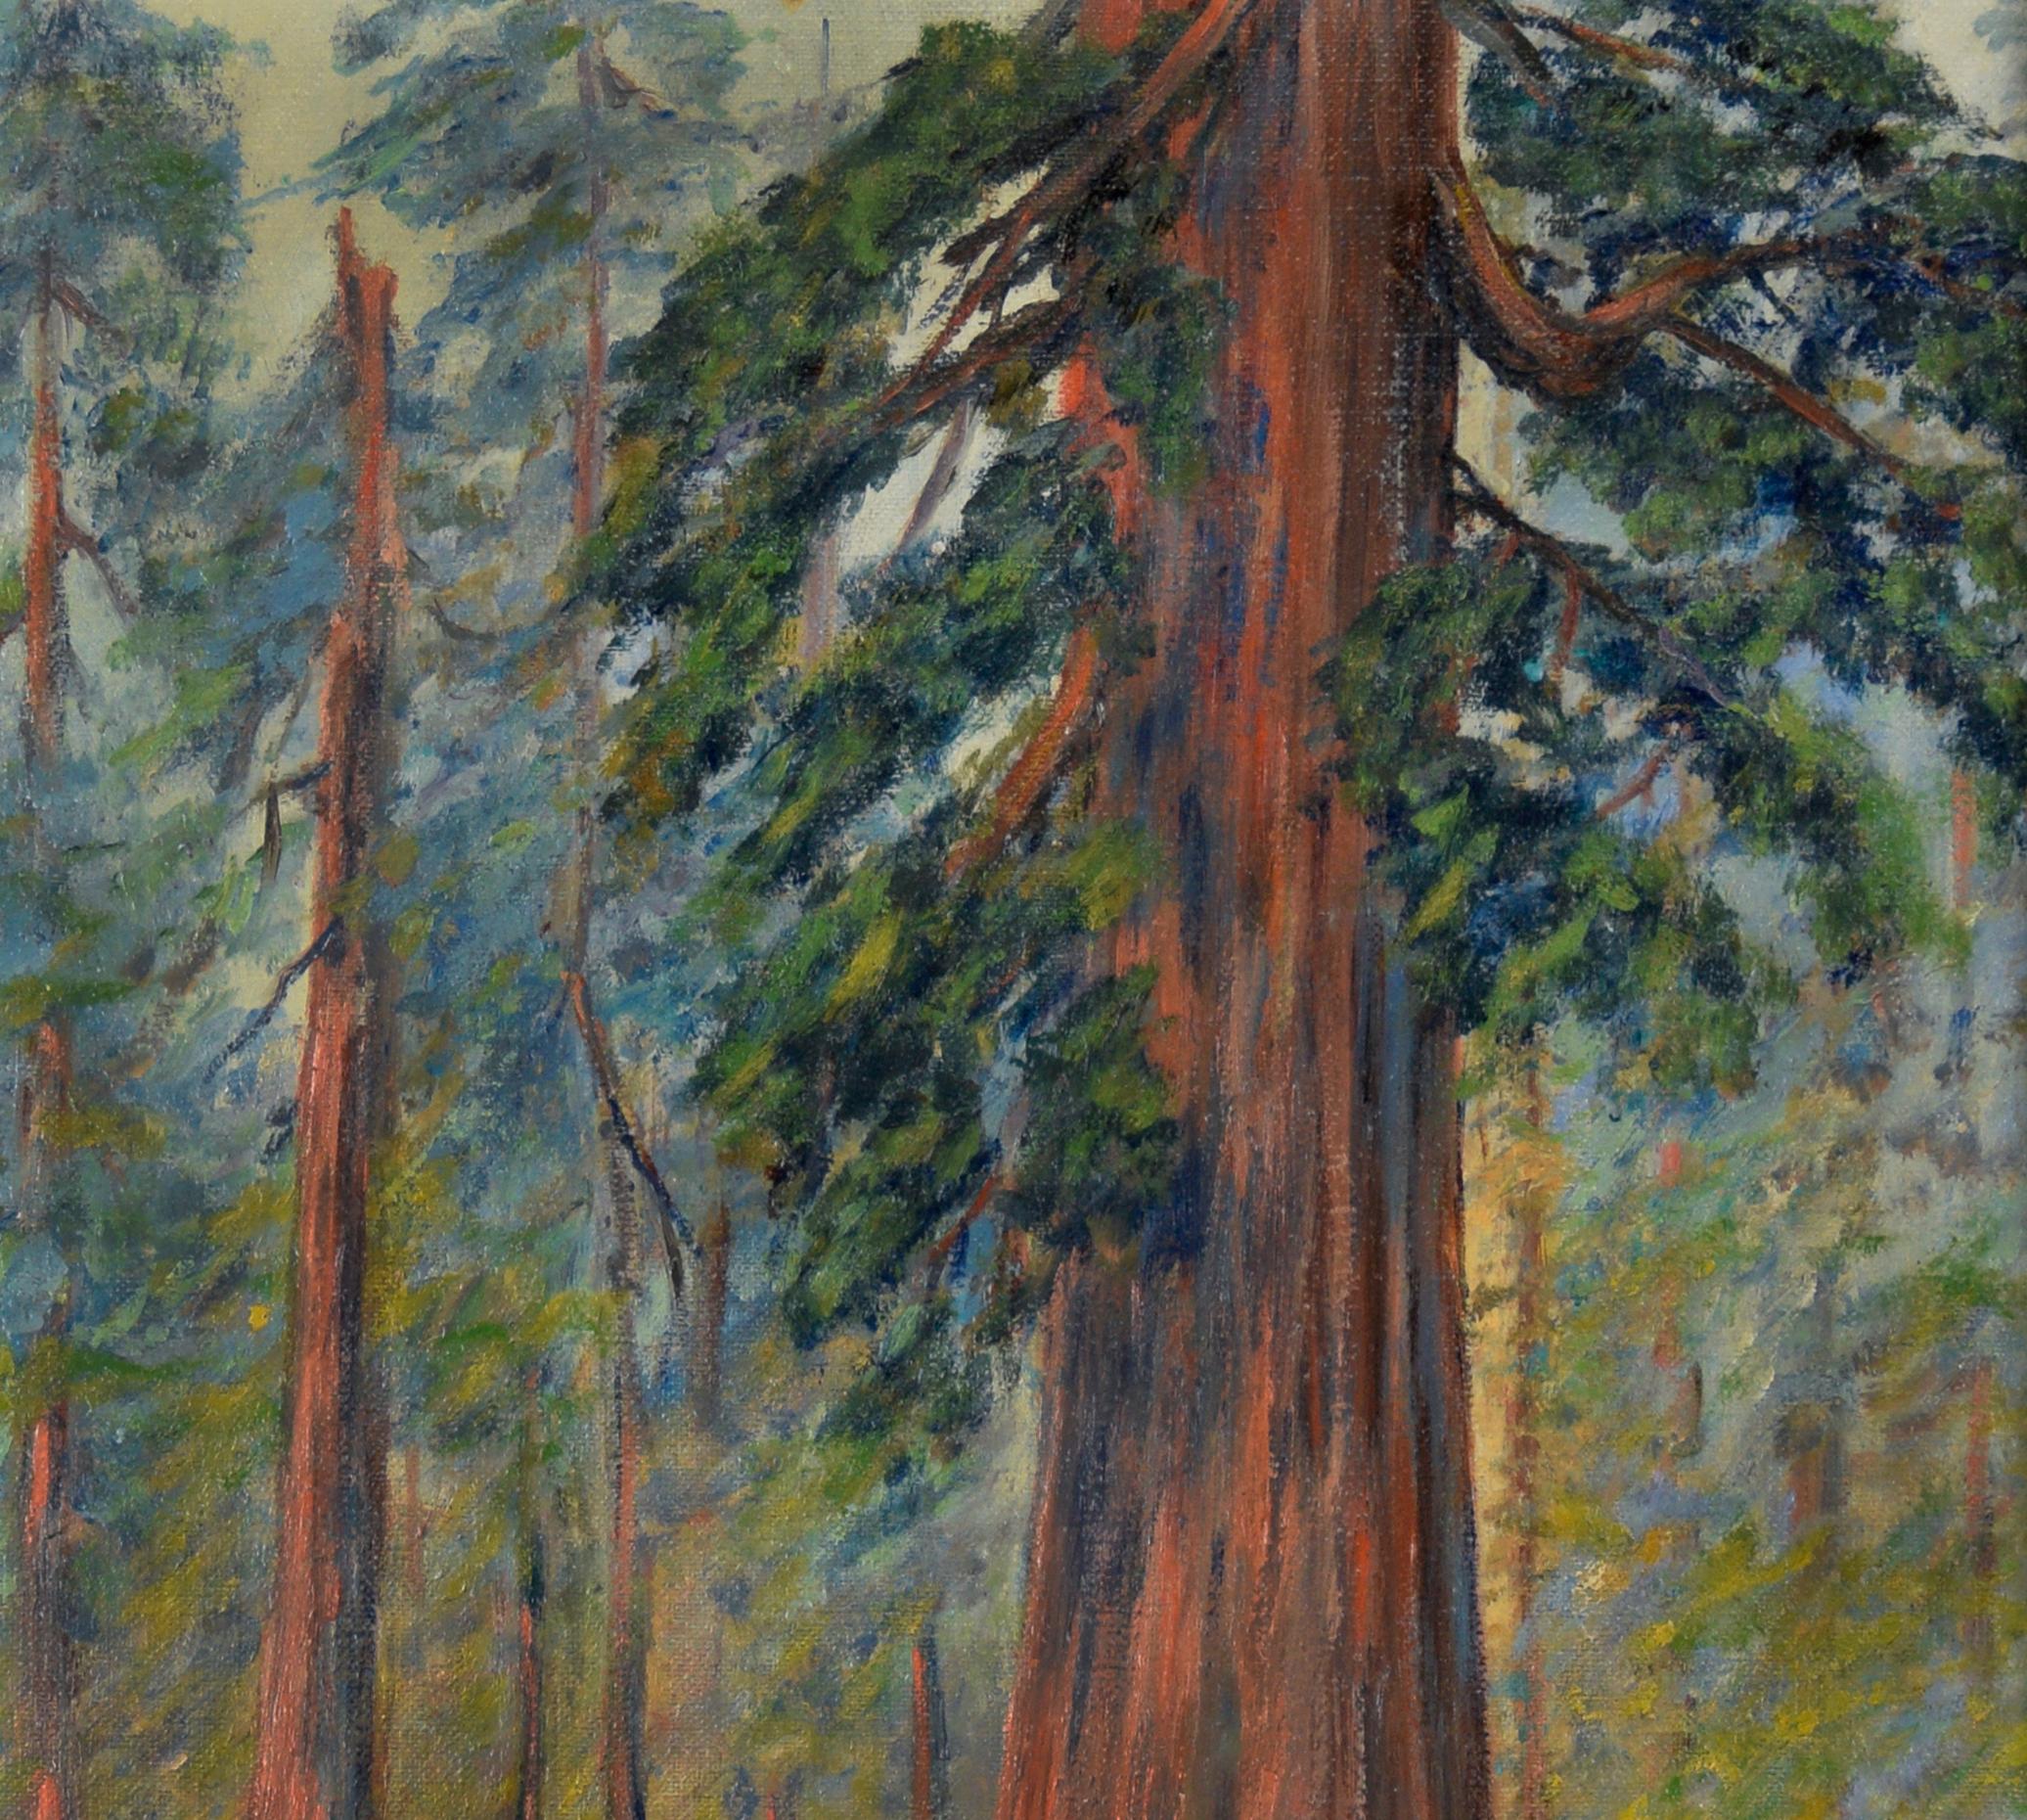 Durch die Redwoods - Amerikanischer Impressionist

Amerikanisches impressionistisches Ölgemälde, das einen Wald aus kalifornischen Mammutbäumen darstellt. Im Mittelpunkt steht ein riesiger Redwood-Baum mit Zweigen mit leuchtend dunkelgrünen